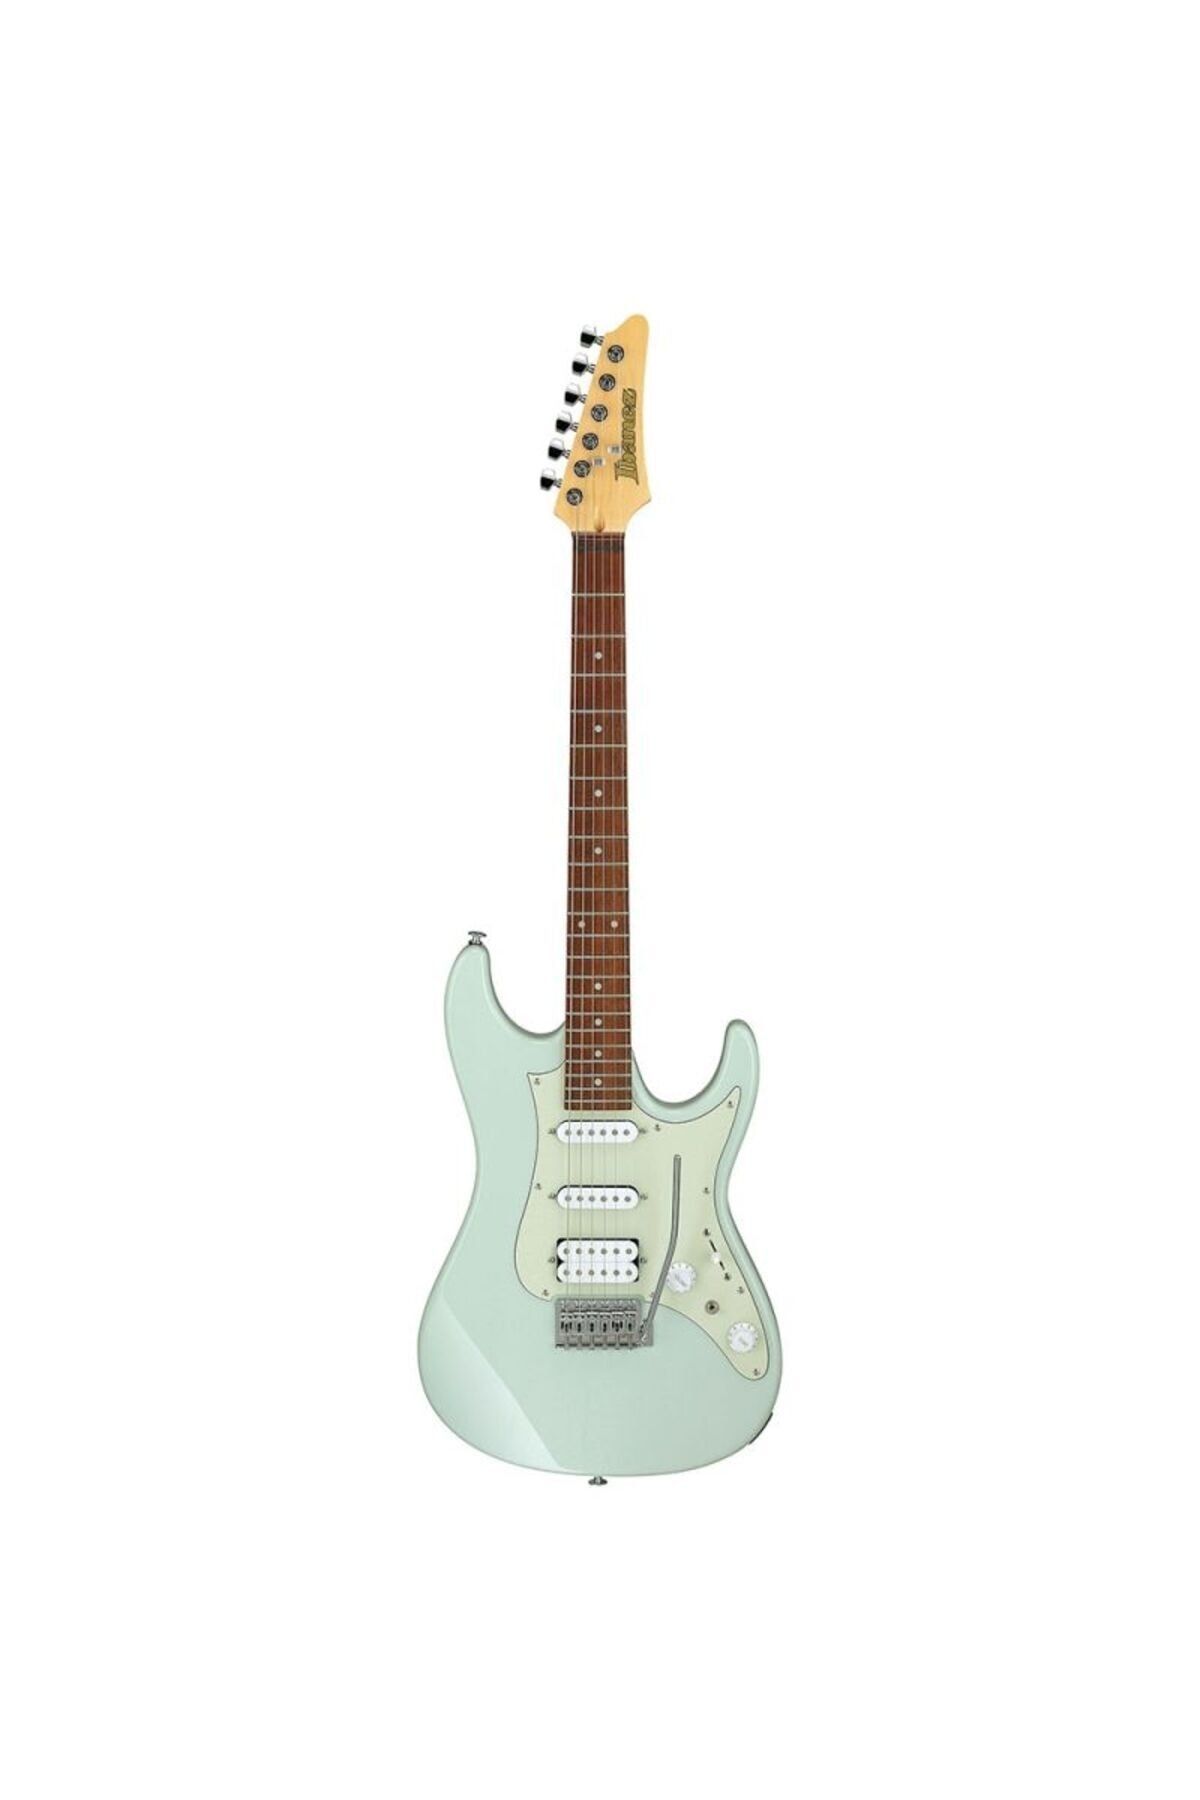 Ibanez AZES40-MGR HSS Trem Mint Green Elektro Gitar